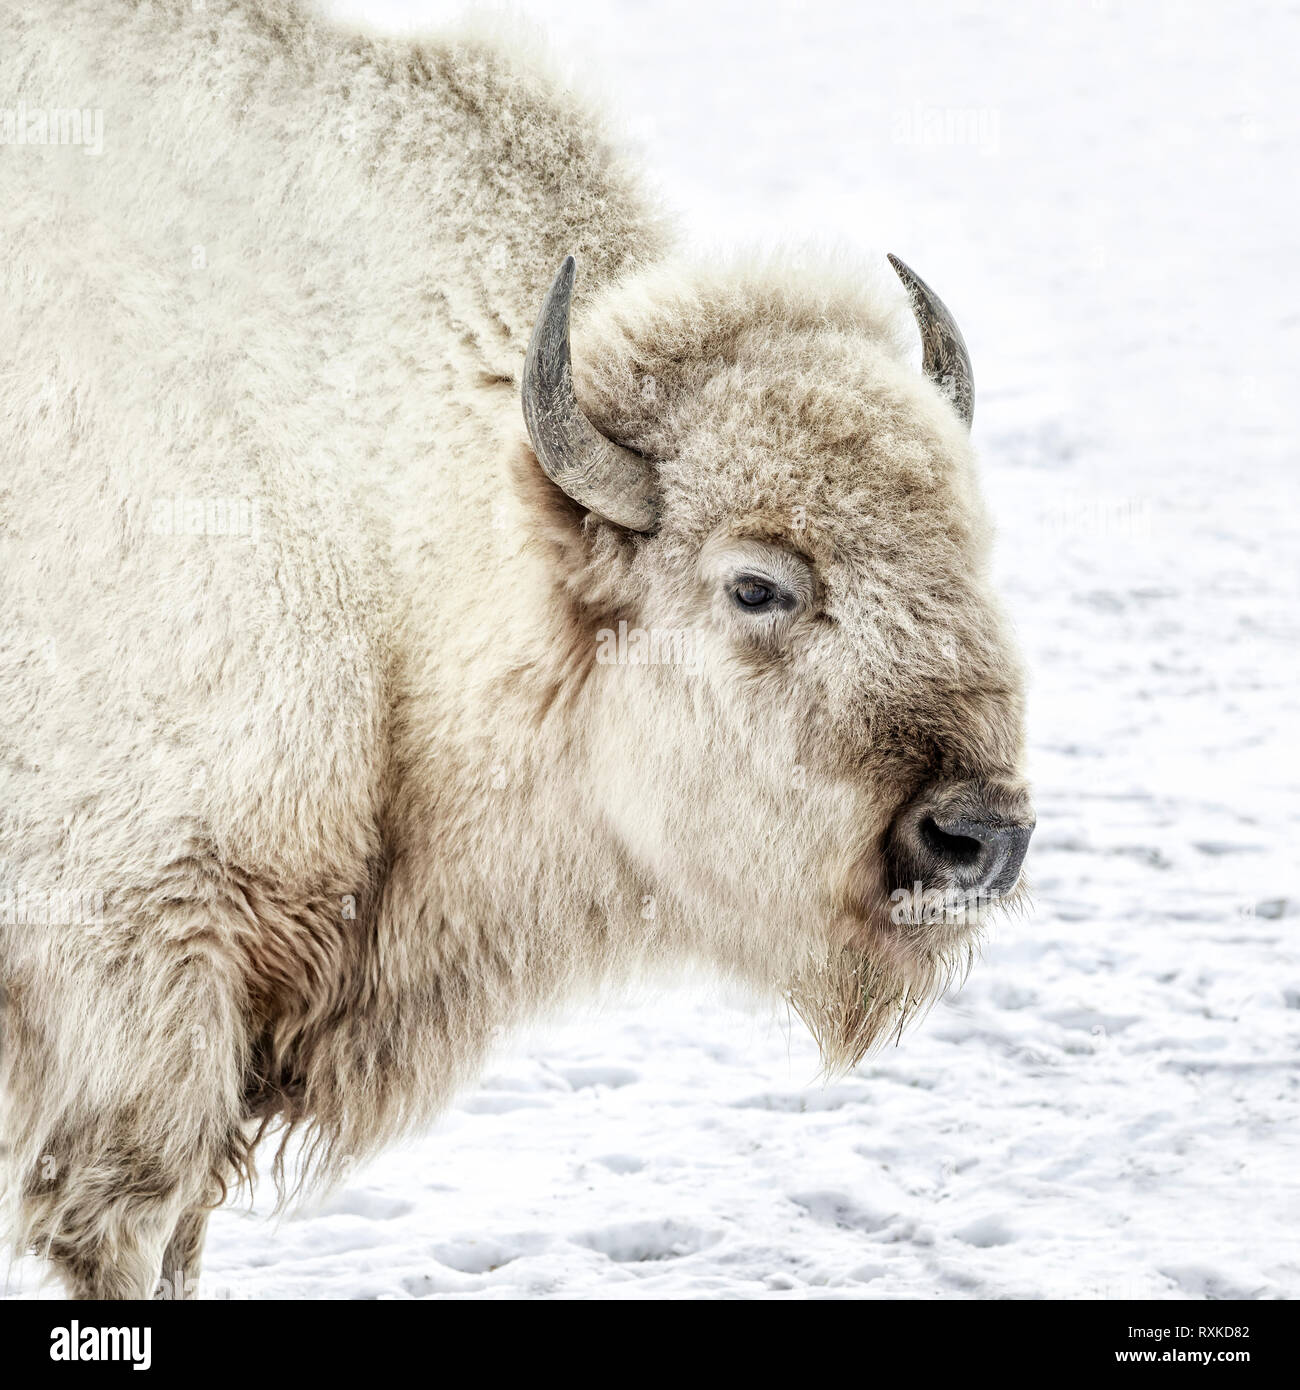 Bisonte Blanco sagrado, o de búfalo, Bison bison bison, Manitoba, Canadá Foto de stock